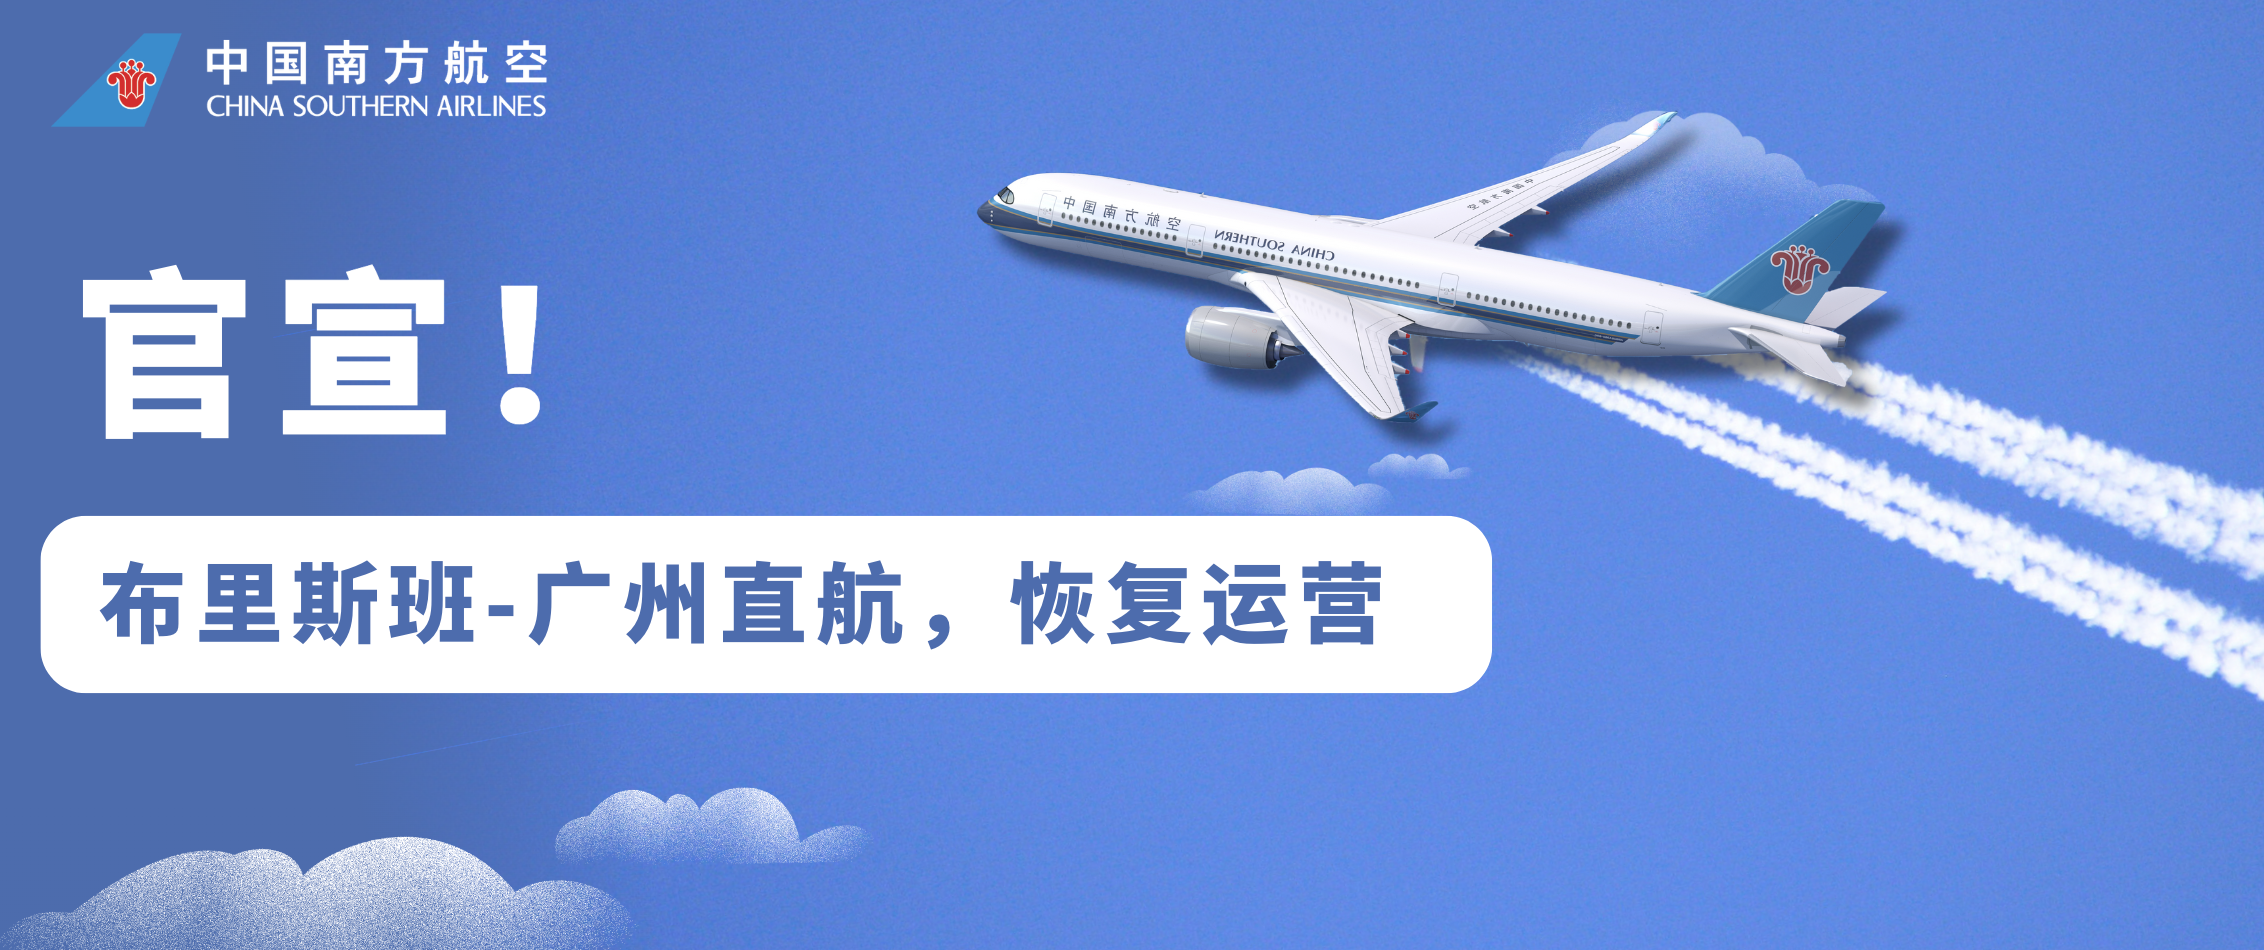 Brisbane direct flight to guangzhou